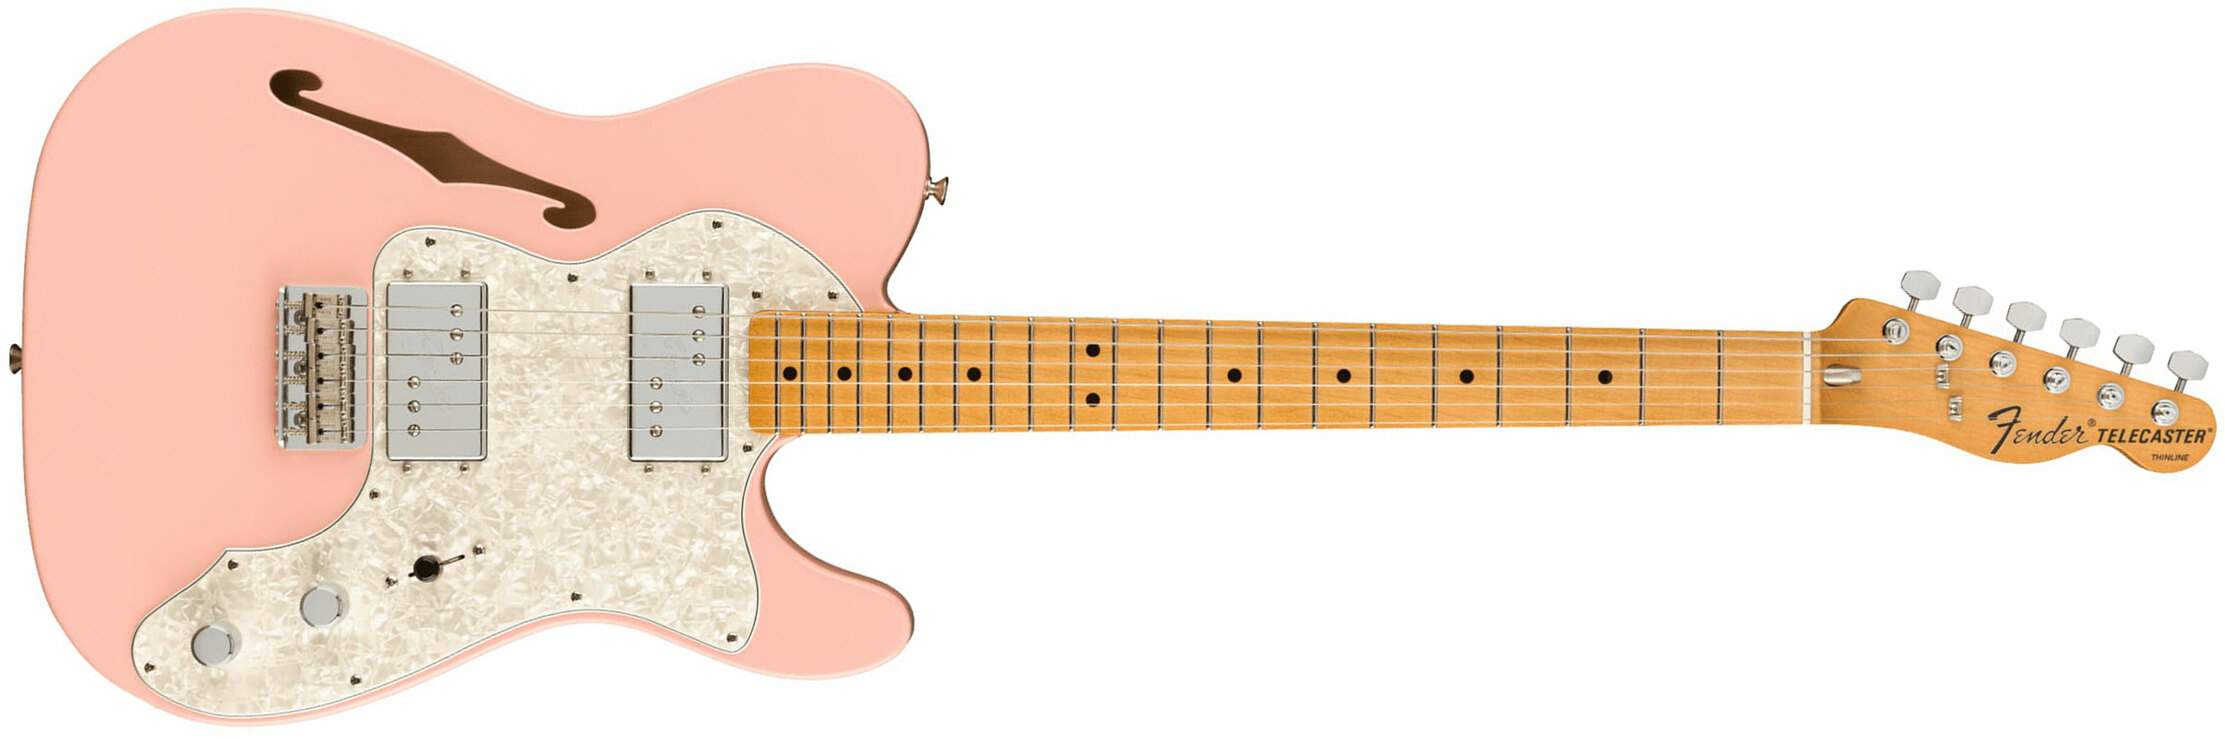 Fender Tele 70s Thinline Vintera Vintage Fsr Ltd Mex Hh Ht Mn - Shell Pink - Televorm elektrische gitaar - Main picture